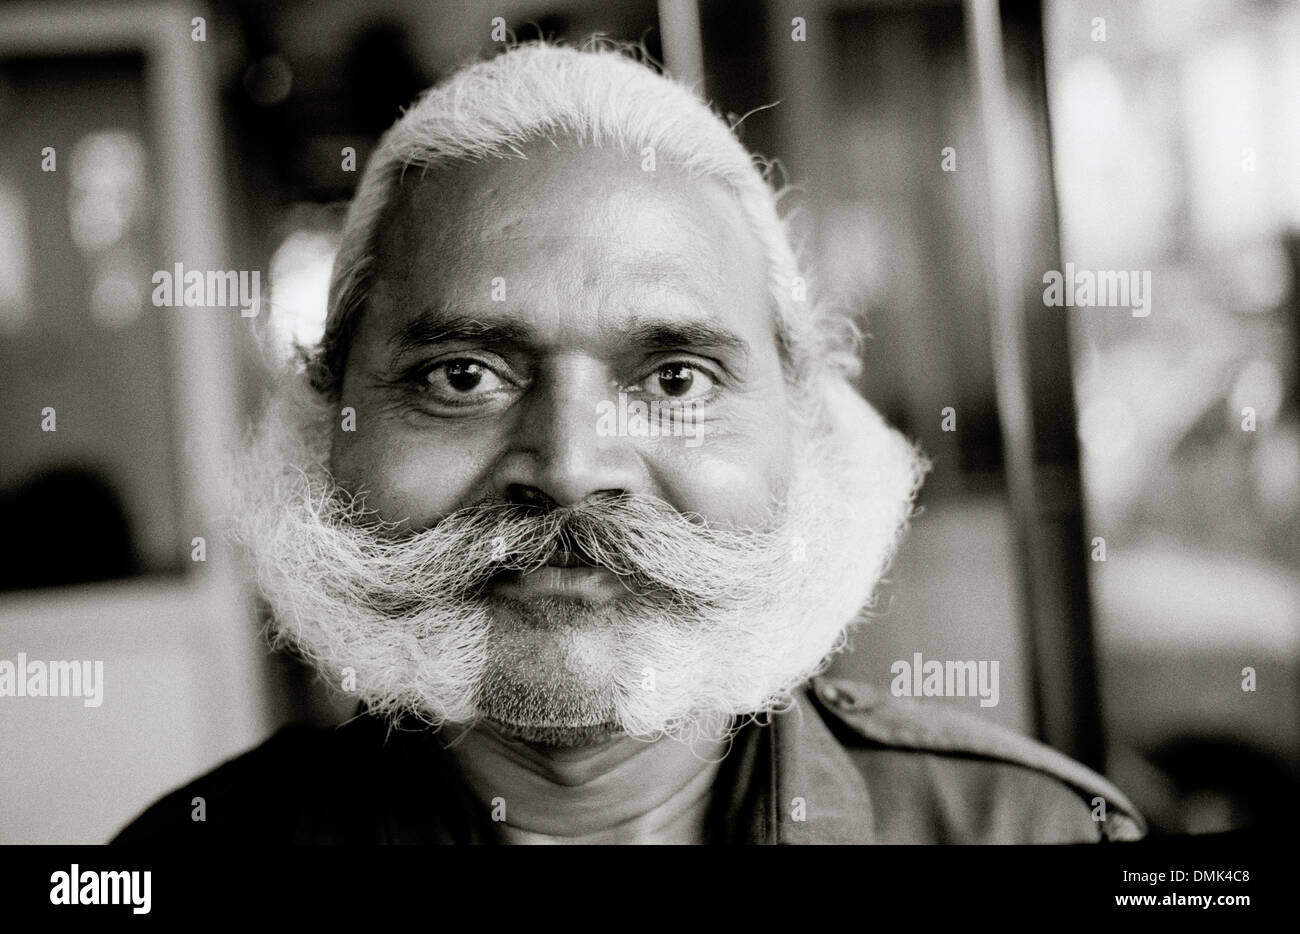 Uomo con i baffi in Mumbai Bombay nel Maharashtra in India in Asia del Sud. Carattere di individualità gente reale ritratto ritrattistica Travel Foto Stock